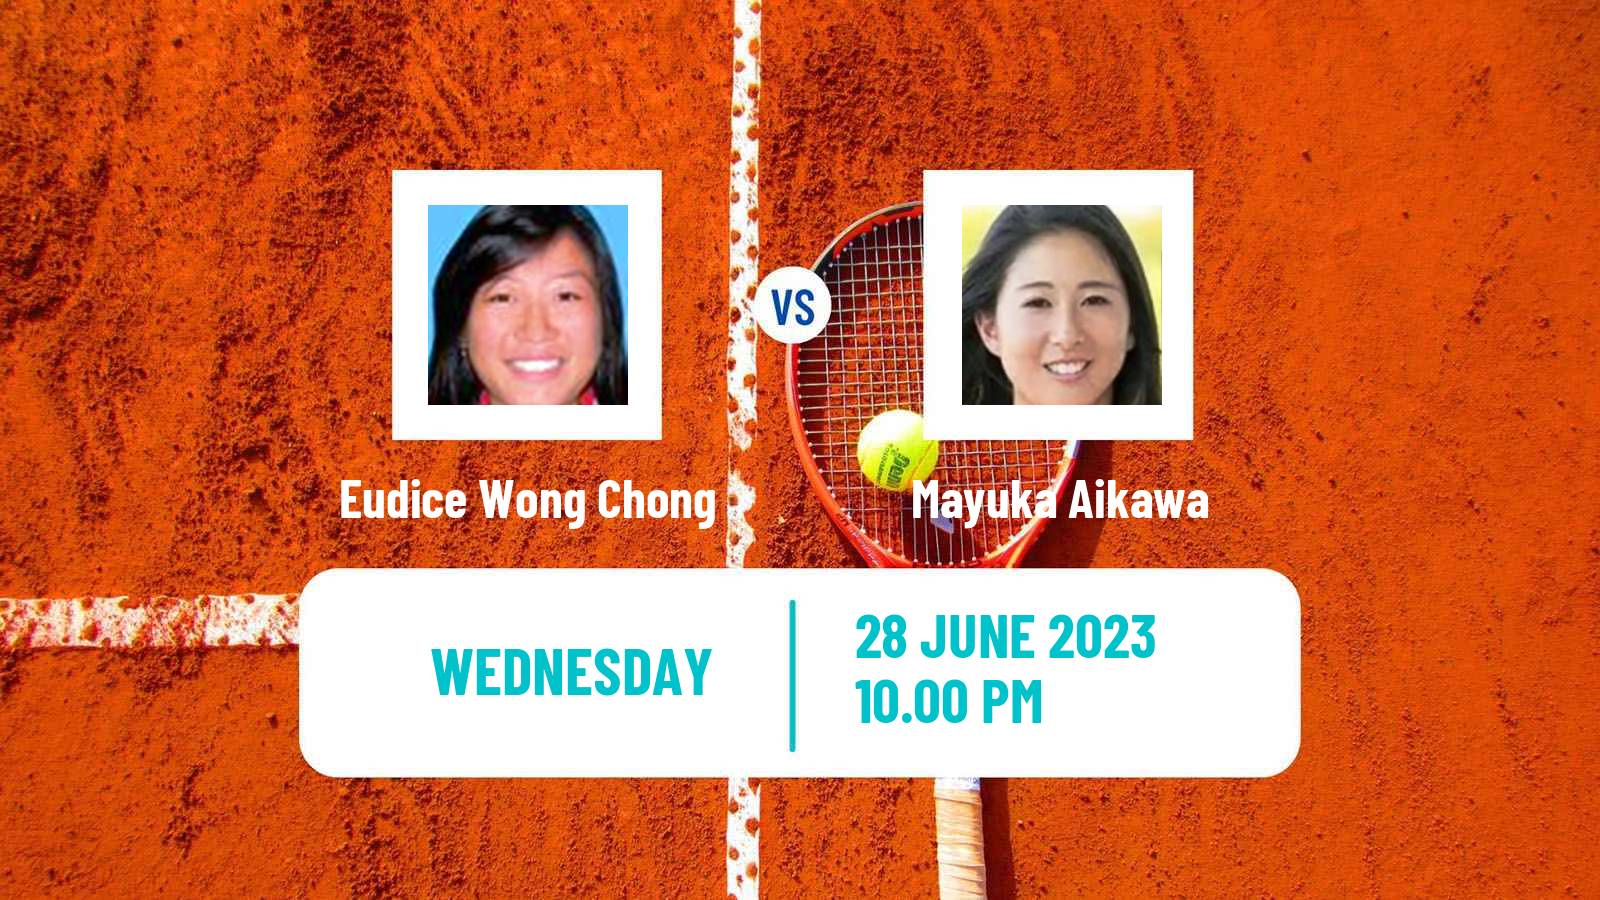 Tennis ITF W25 Hong Kong Women Eudice Wong Chong - Mayuka Aikawa